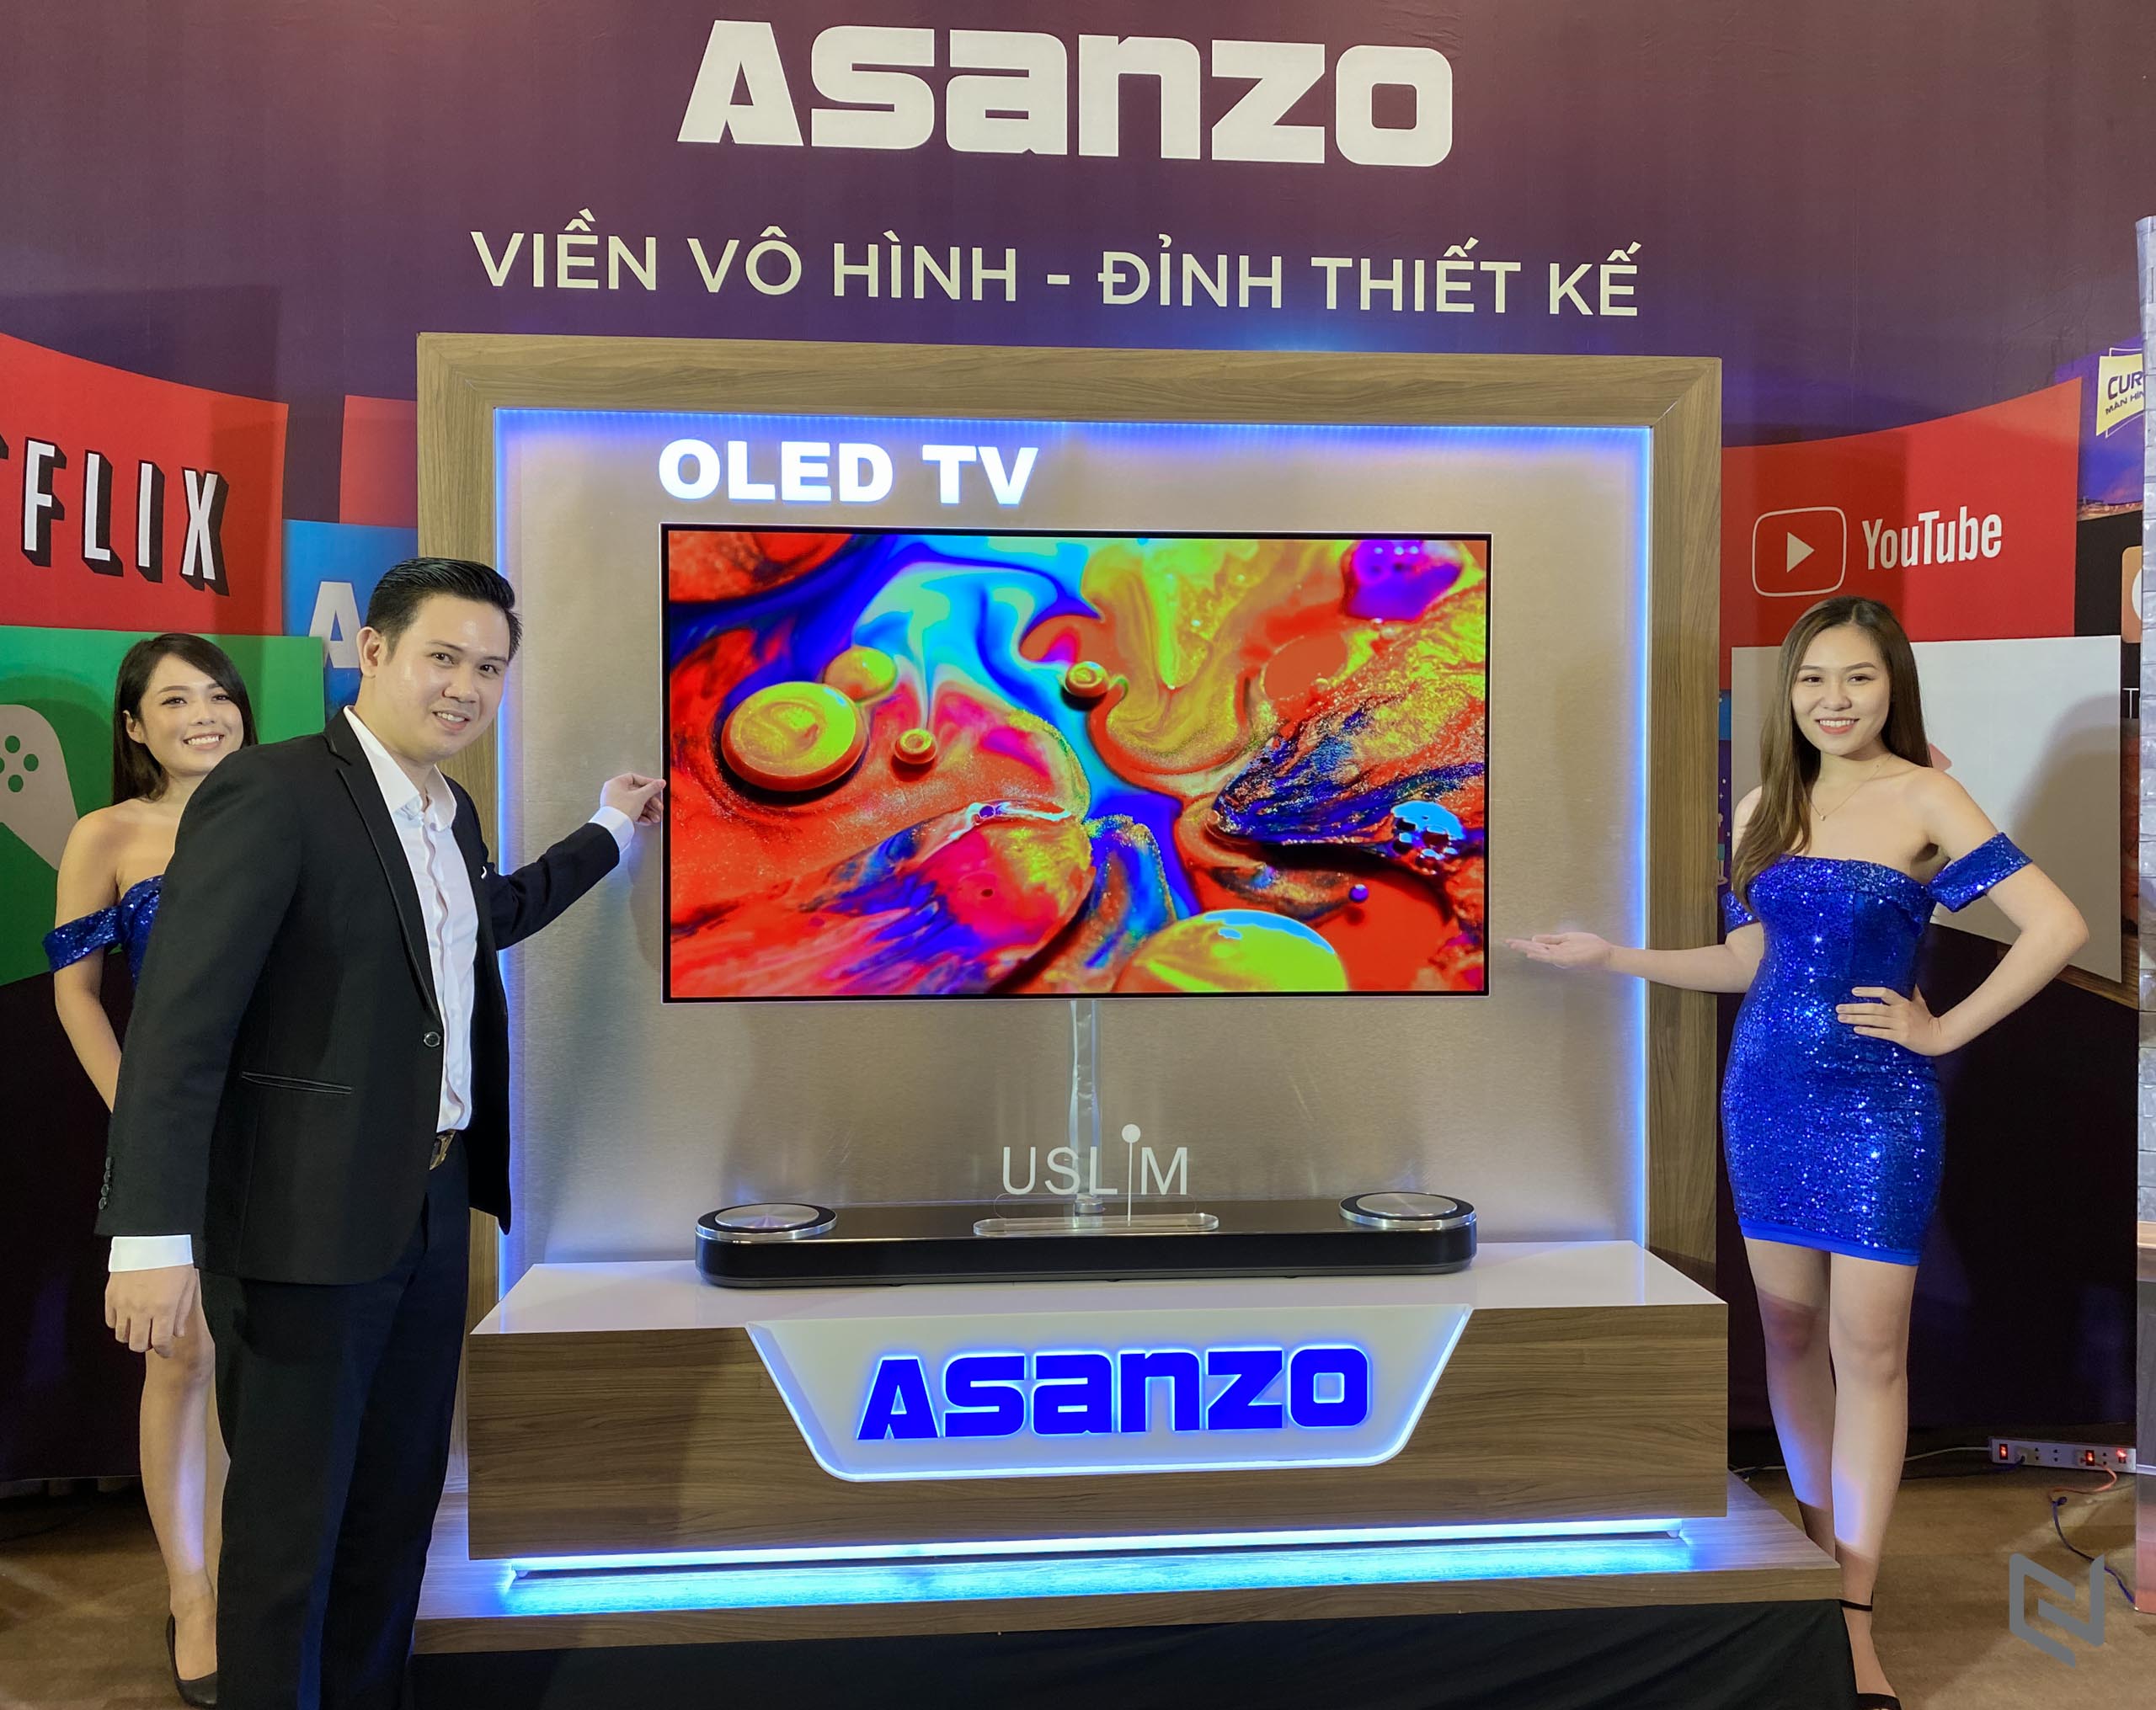 Asanzo ra mắt dòng TV OLED dán tường cùng bộ đôi iSlim thế hệ mới